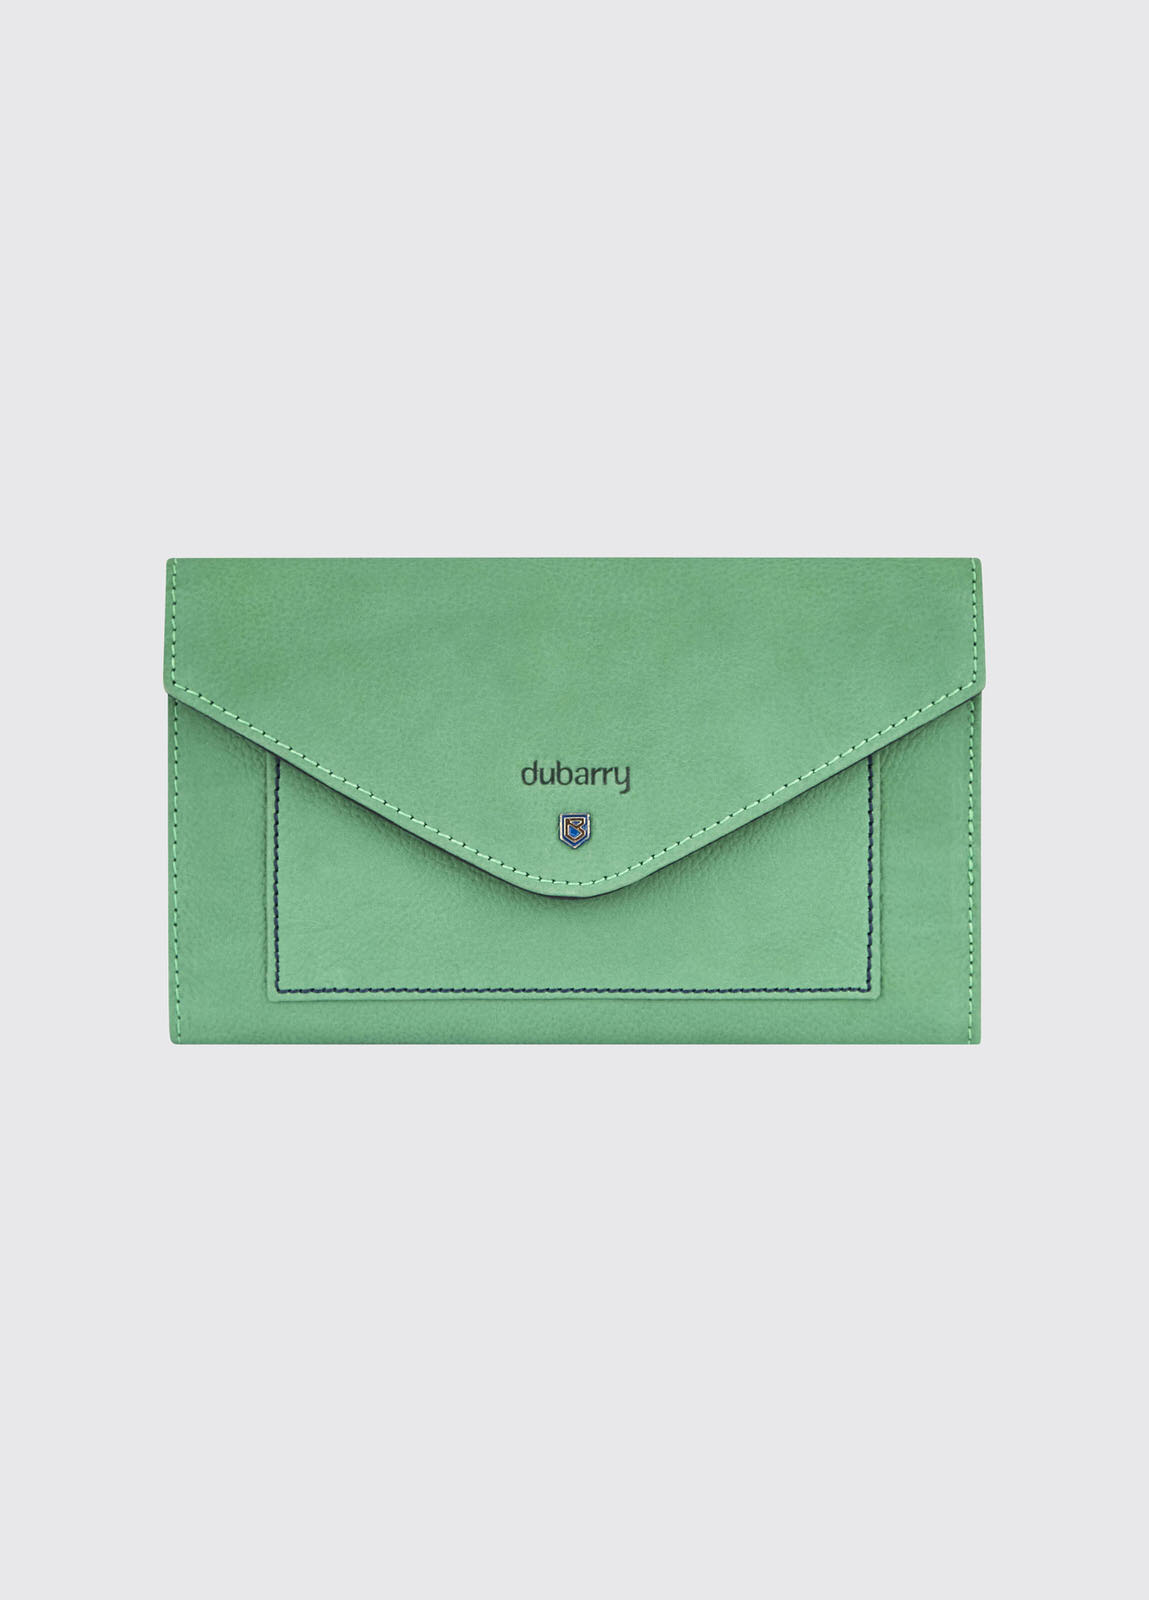 kelly green wallet